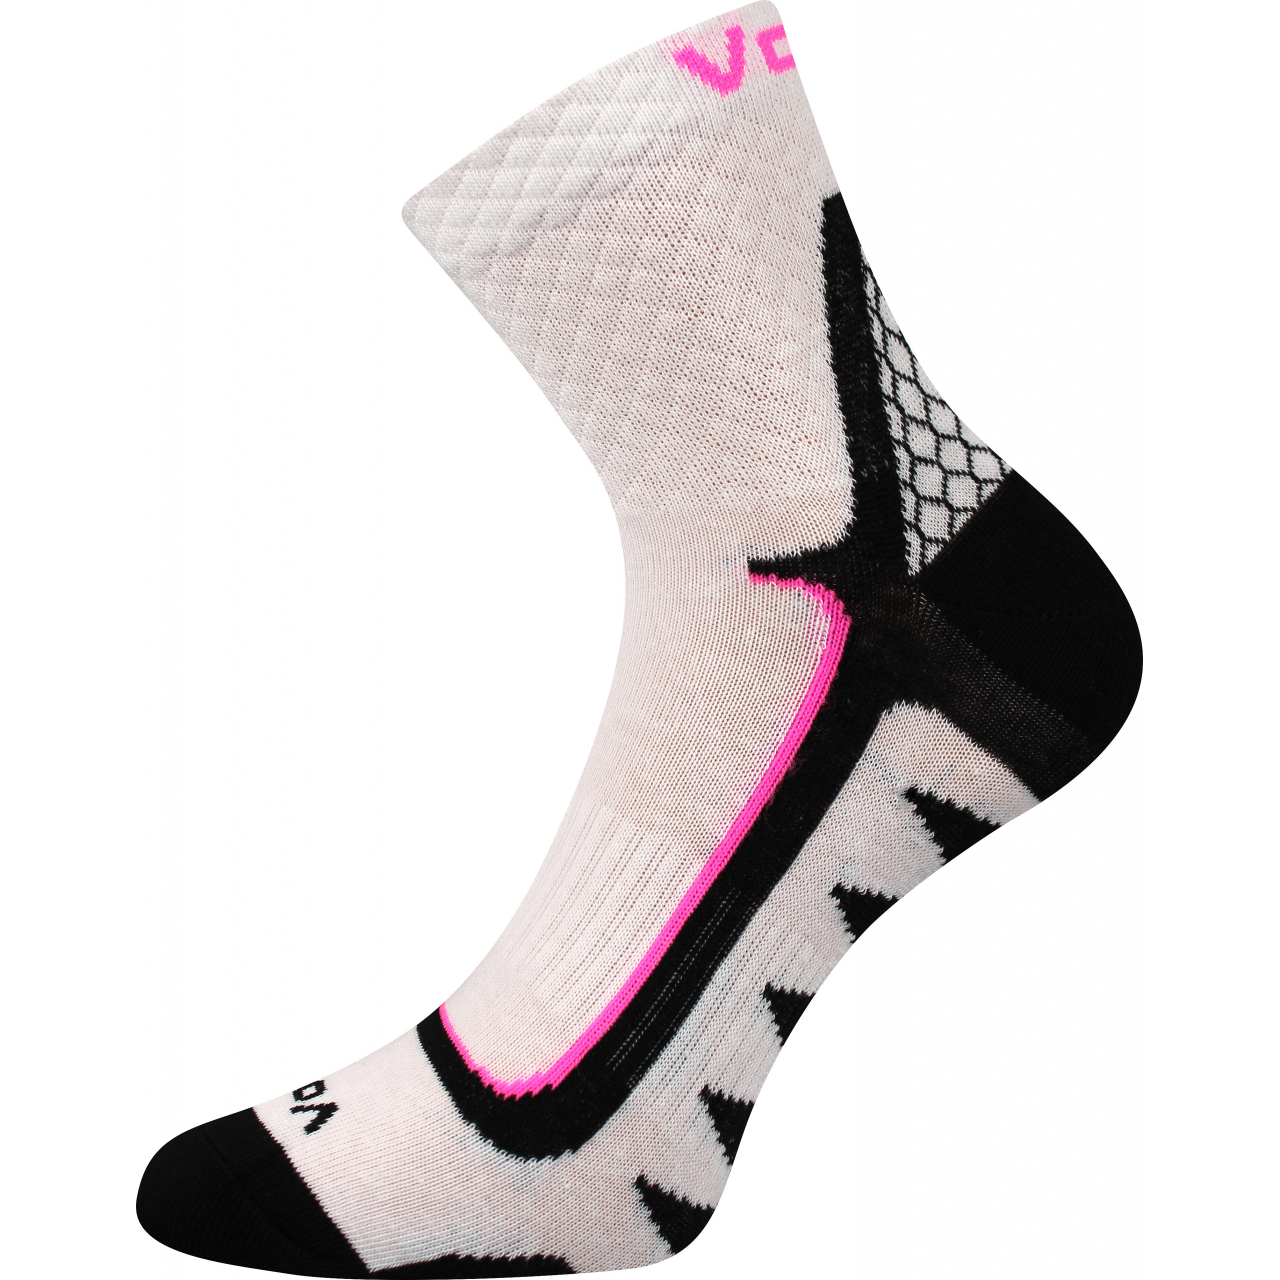 Ponožky sportovní unisex Voxx Kryptox - bílé, 39-42